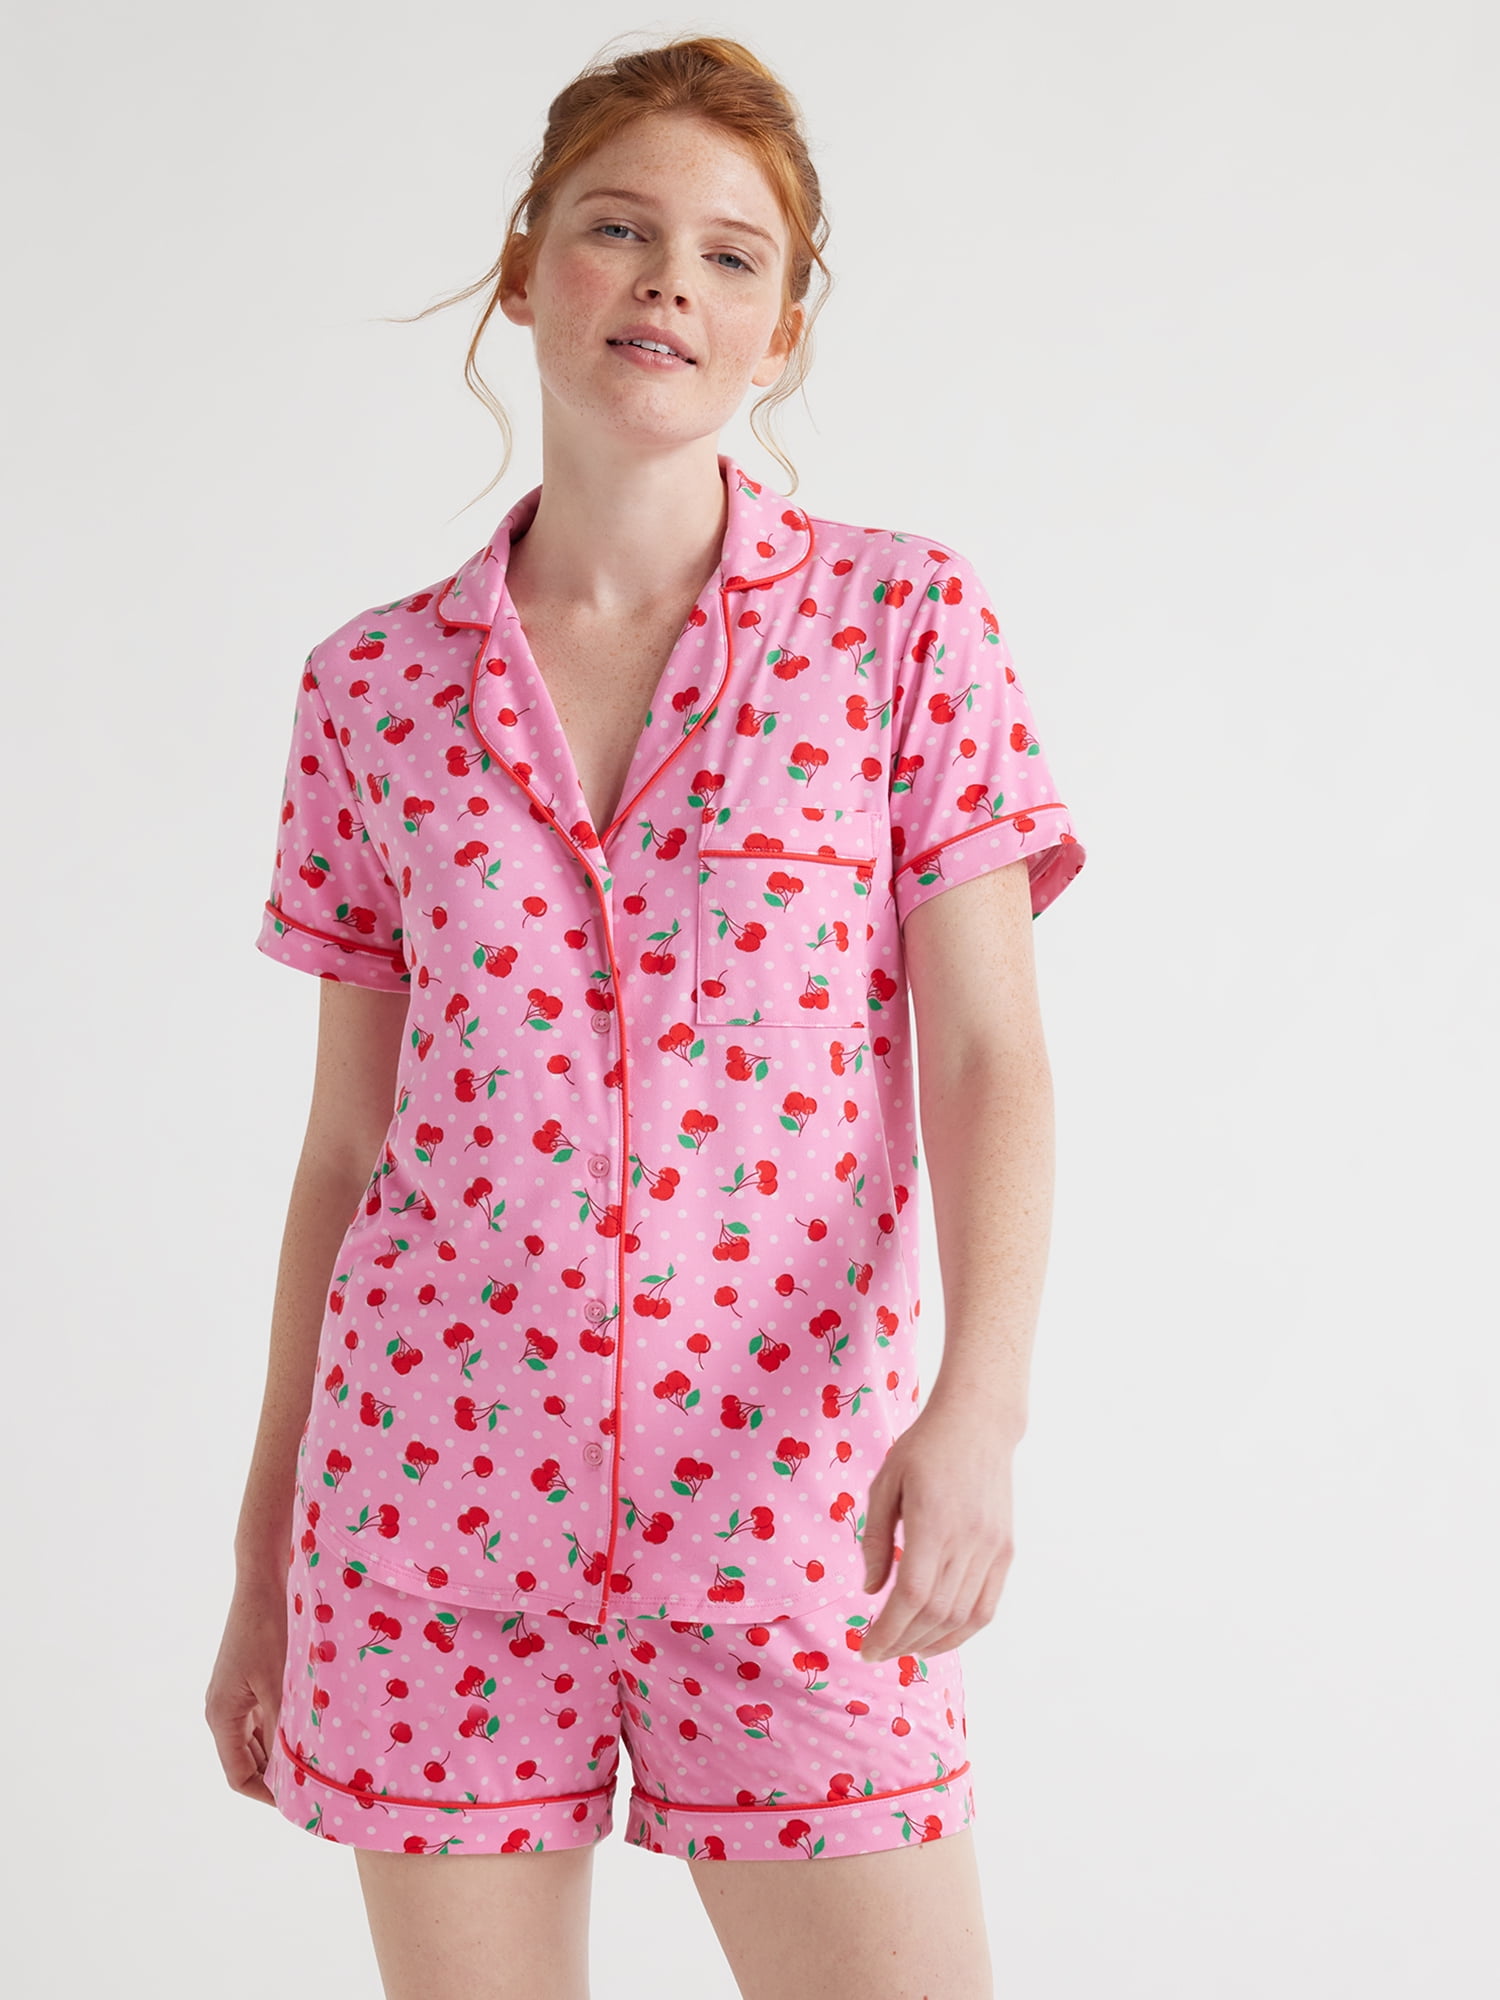 Joyspun Women's Knit Notch Collar Top and Shorts Pajama Set, 2-Piece, Sizes  S to 3X 